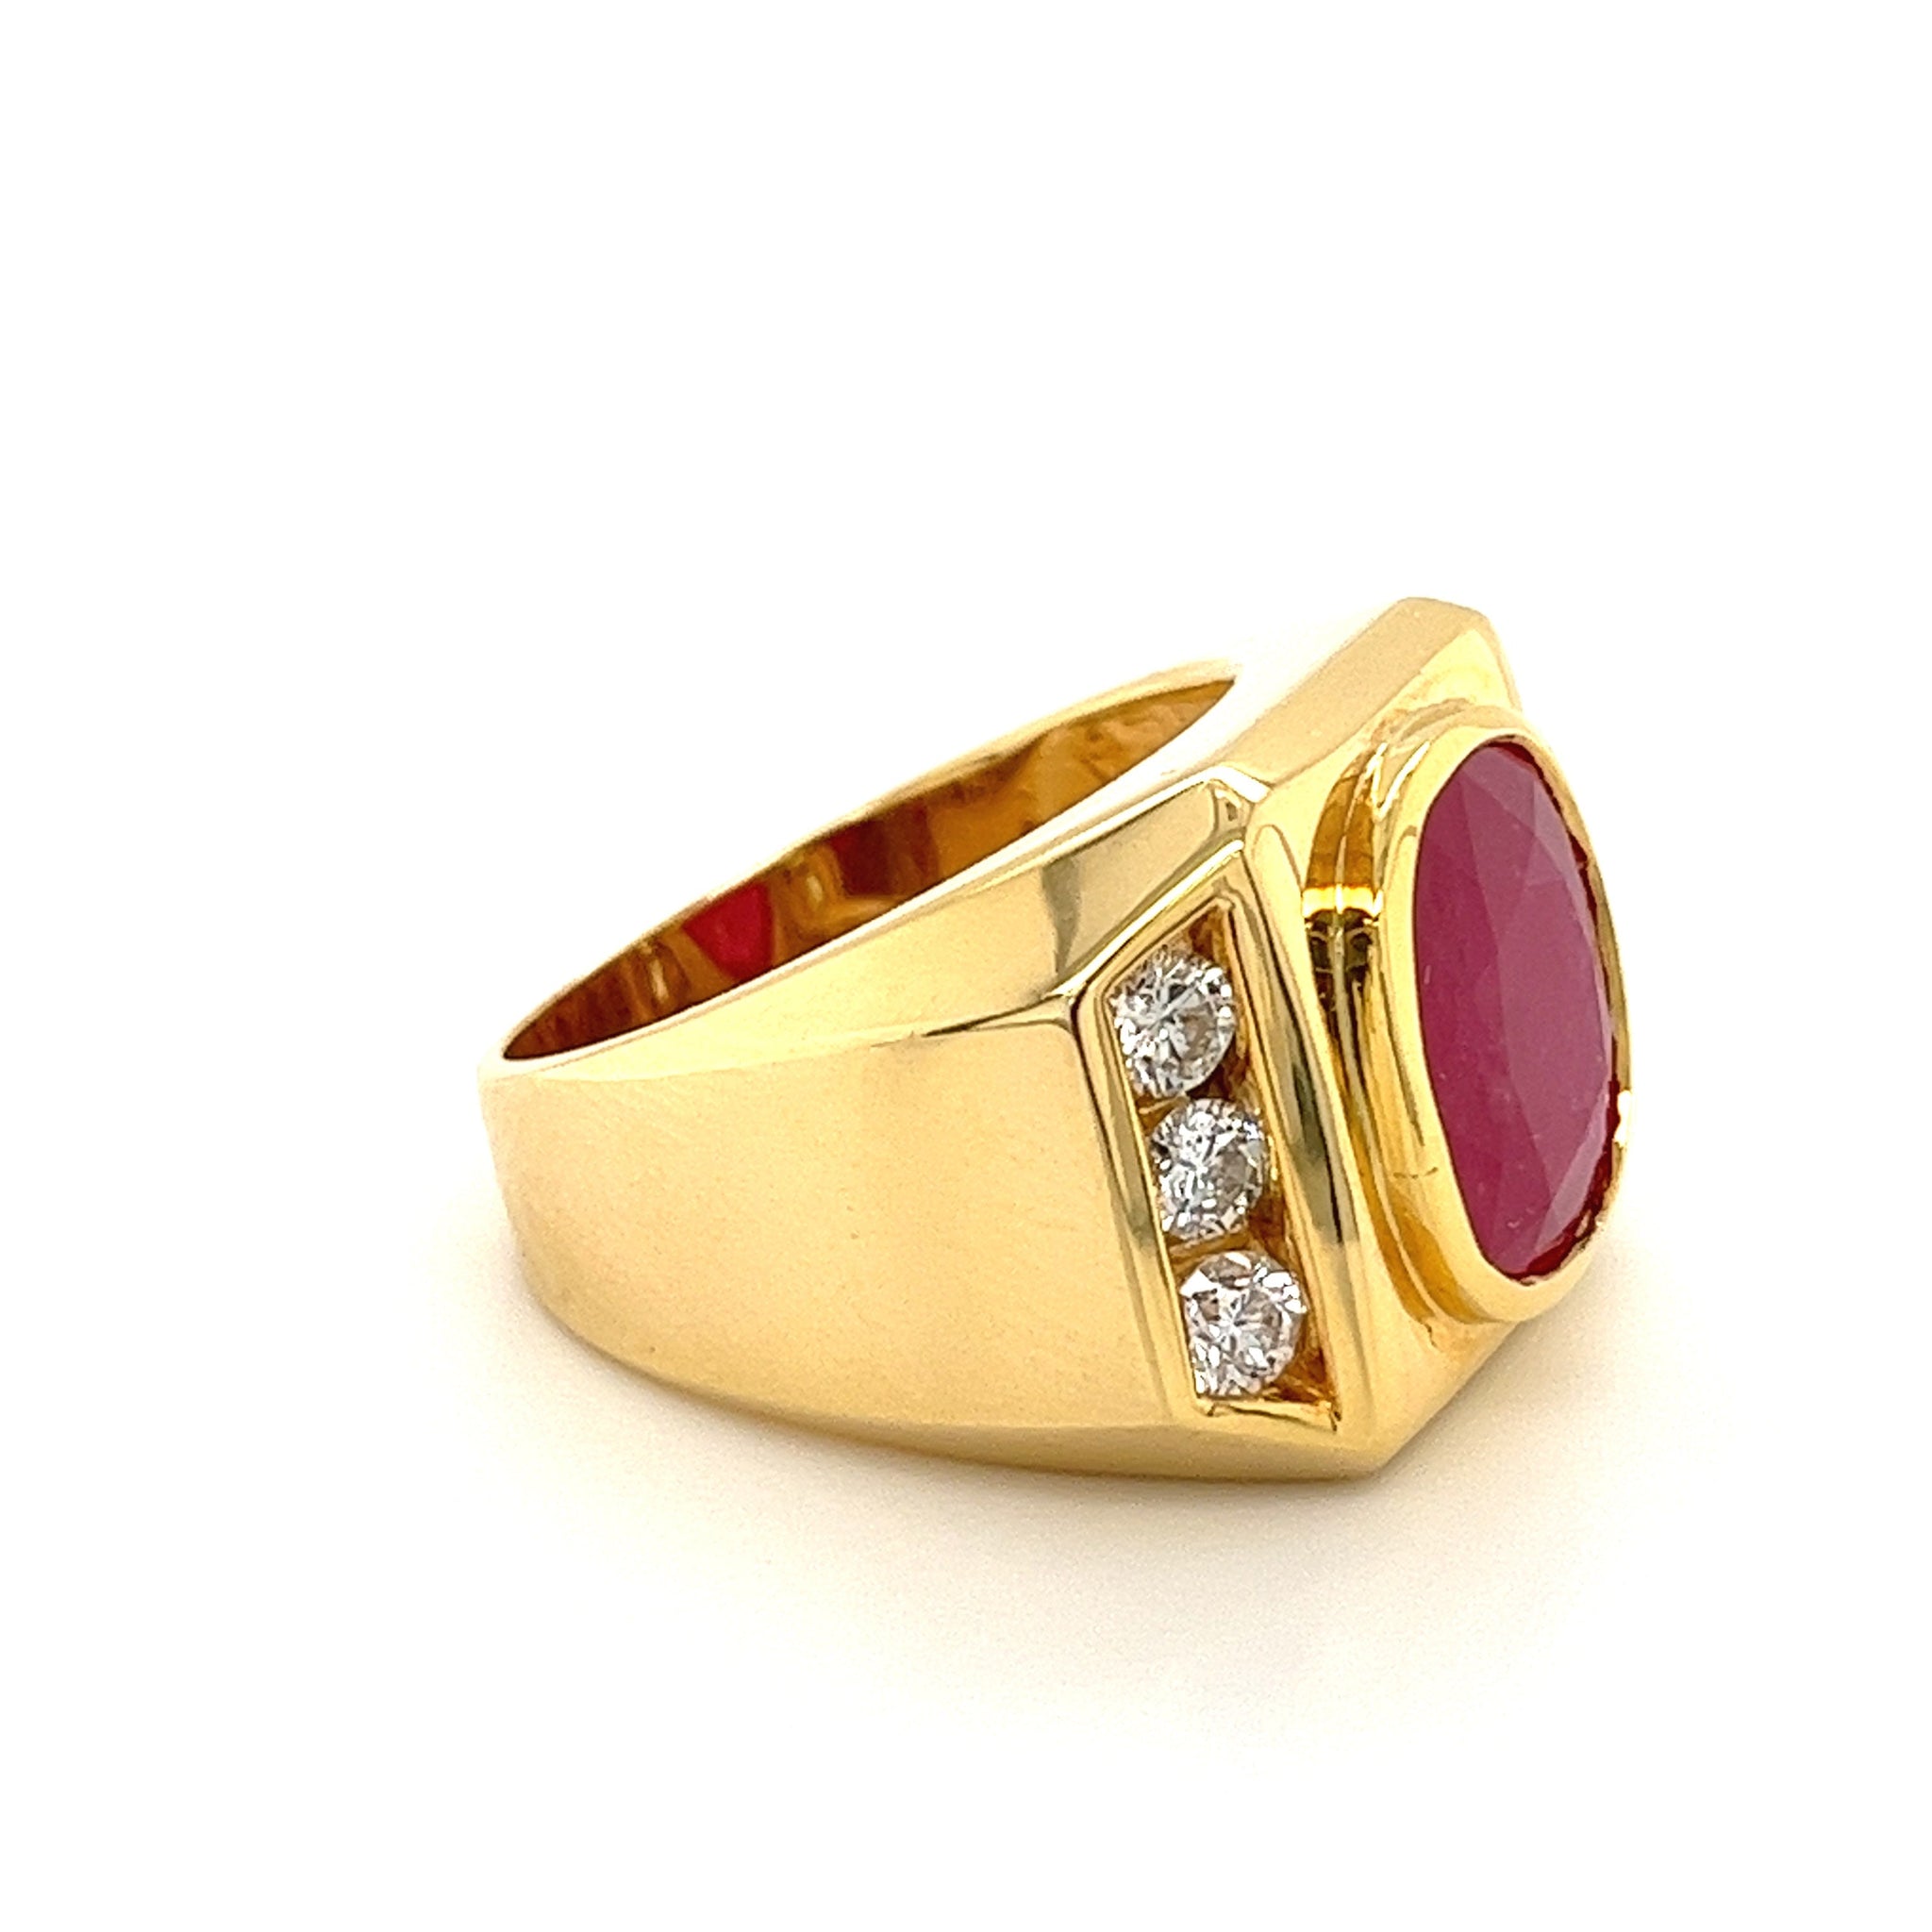 Senco Gold & Diamonds Unique Unfilled Diamond Men's Ring : Amazon.in:  Jewellery